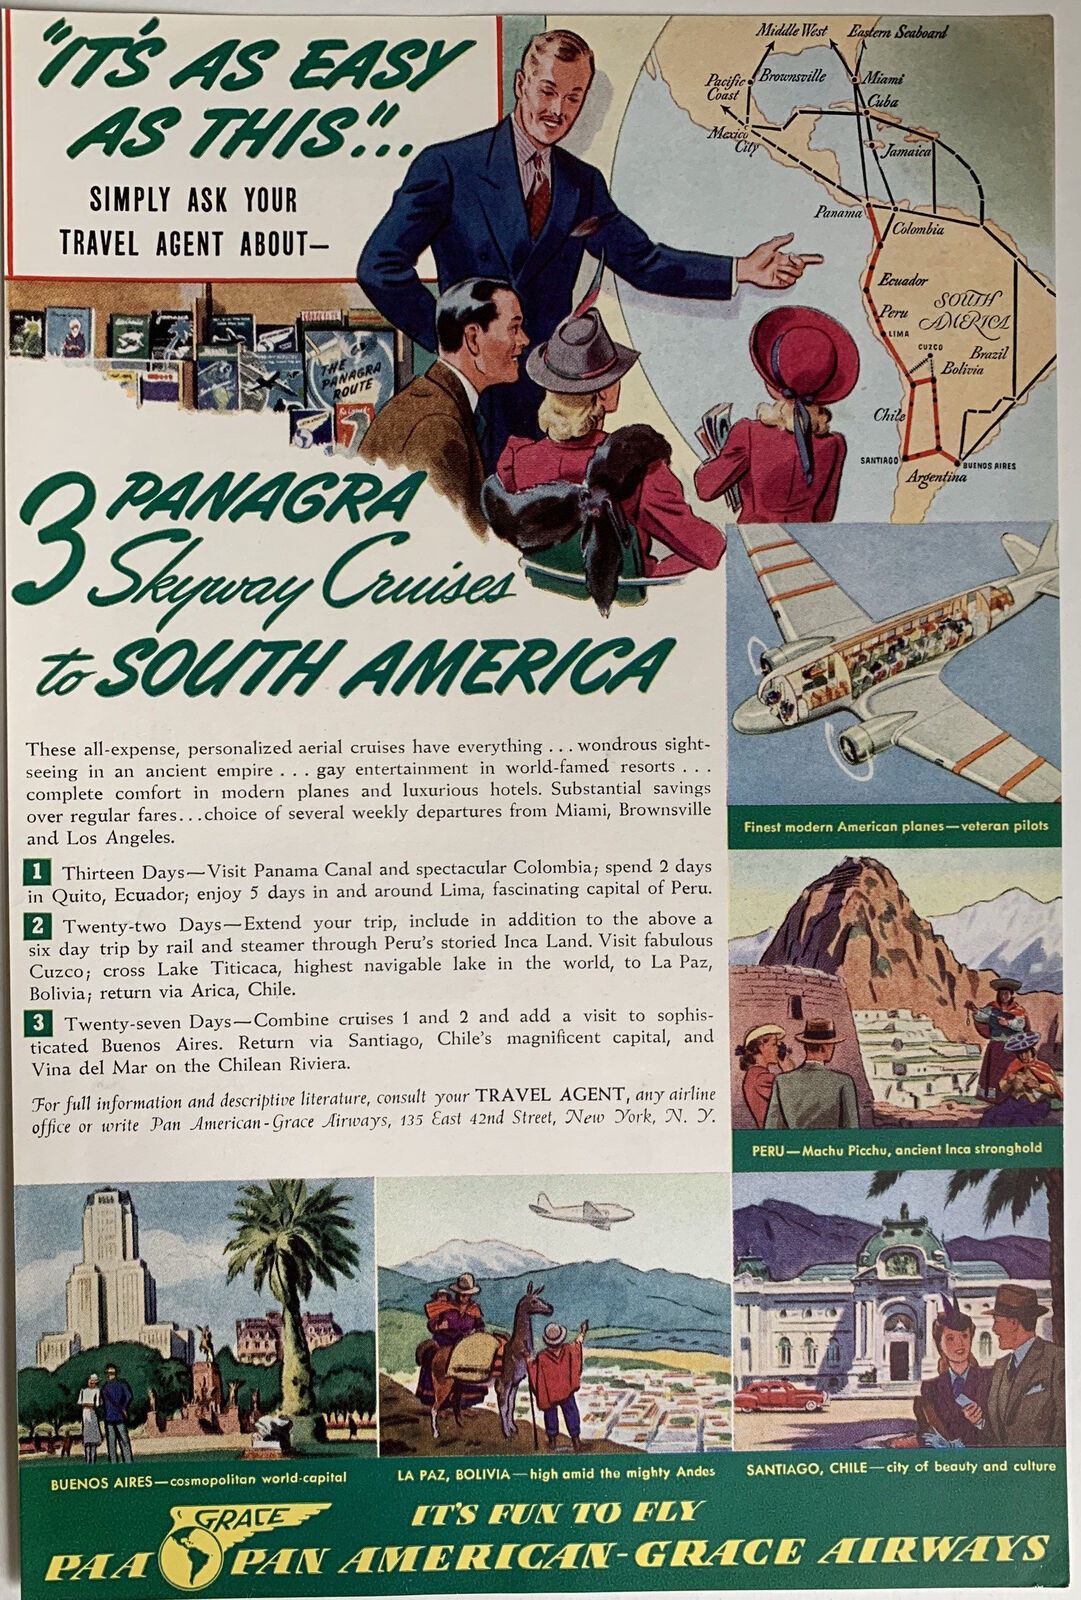 Vintage 1940s Pan American-Grace Airways Travel Ad